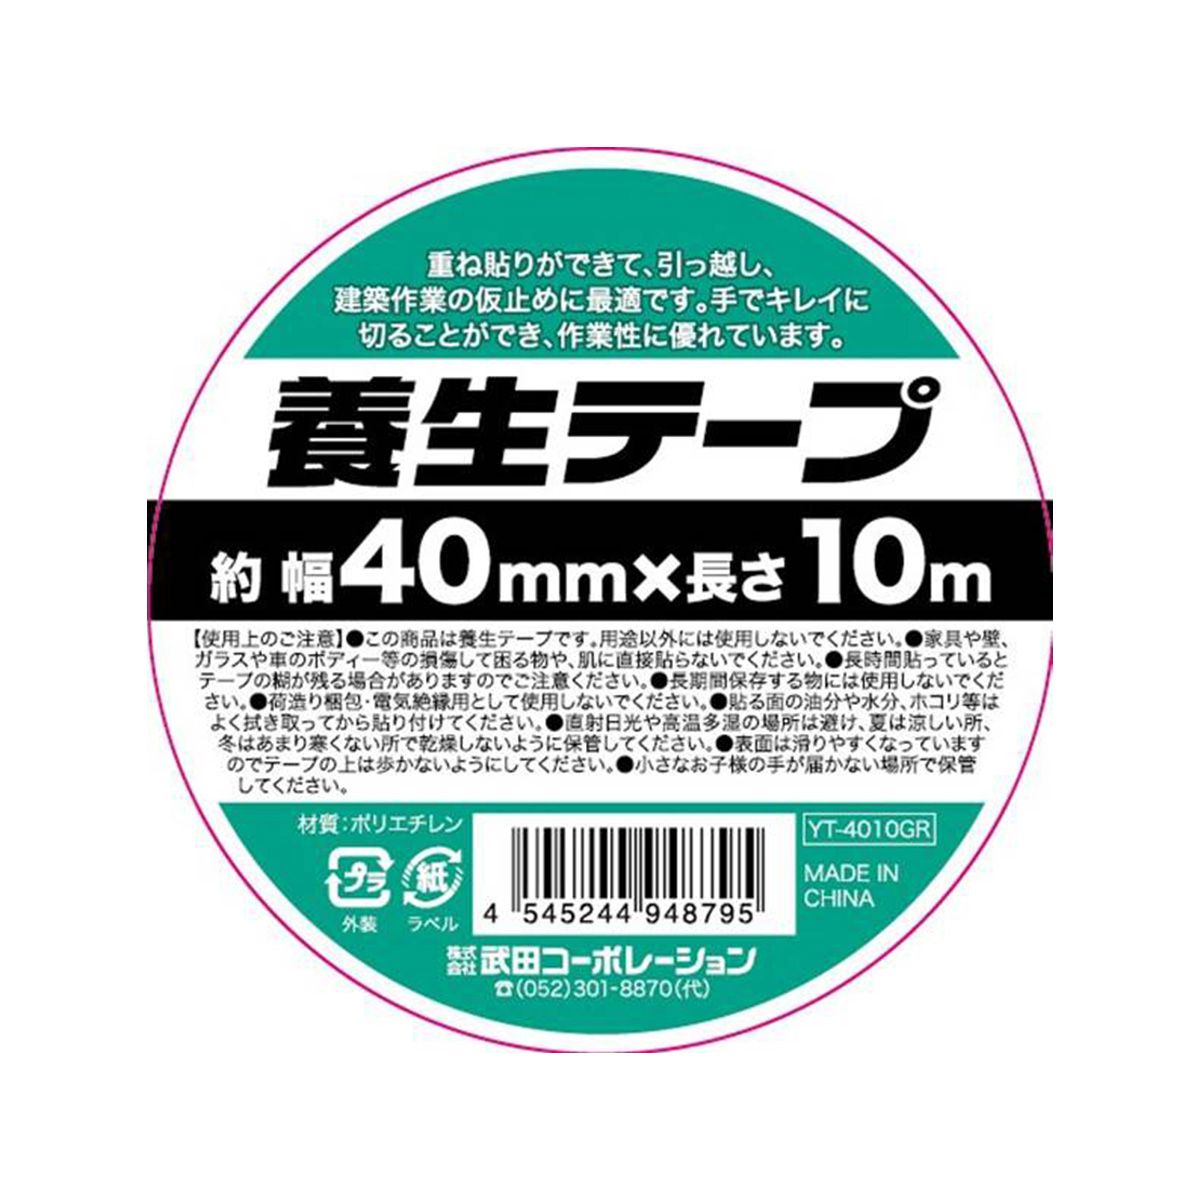 養生テープ40mm×10mGR 9001/456321